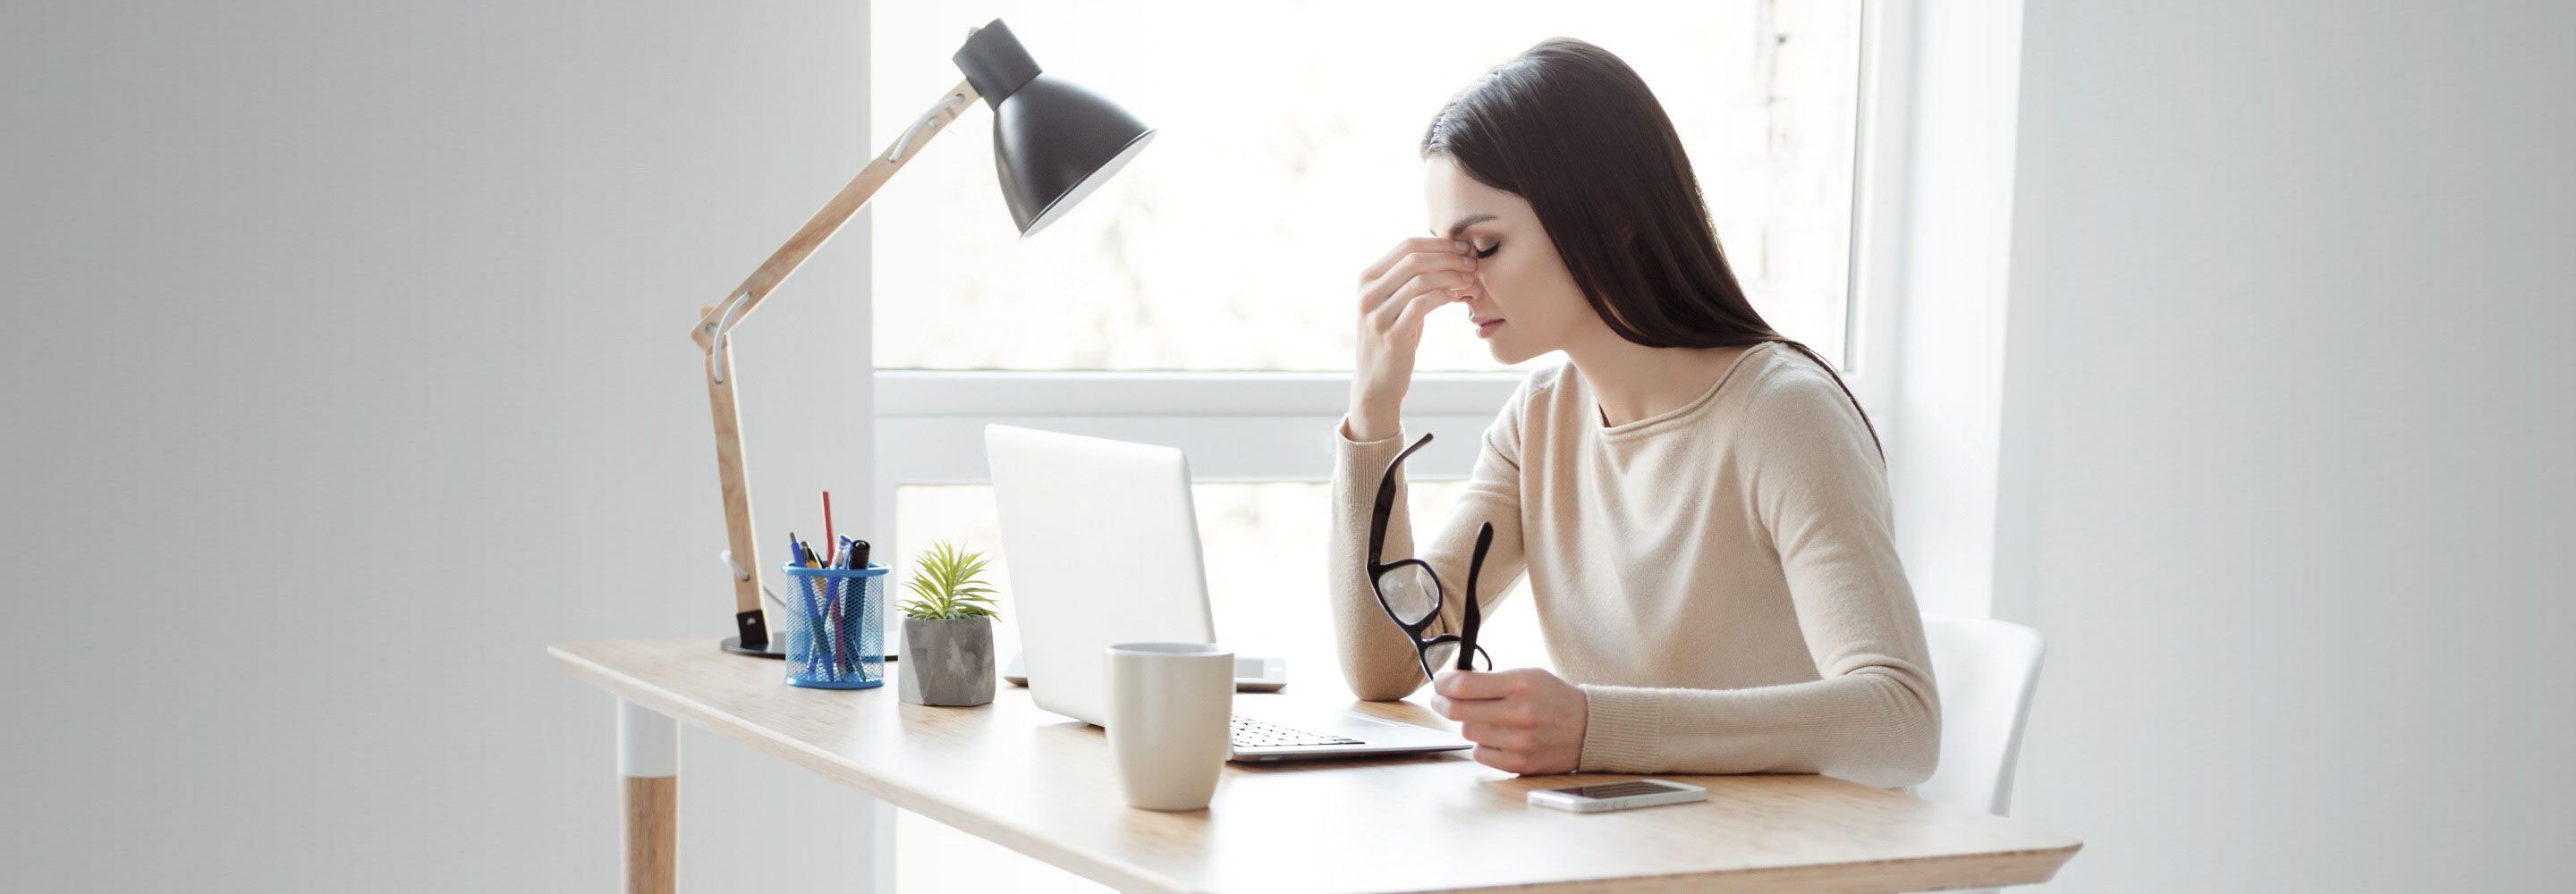 Office-Eye-Syndrom“: Tipps gegen müde Augen im Büro I Schäfer Shop